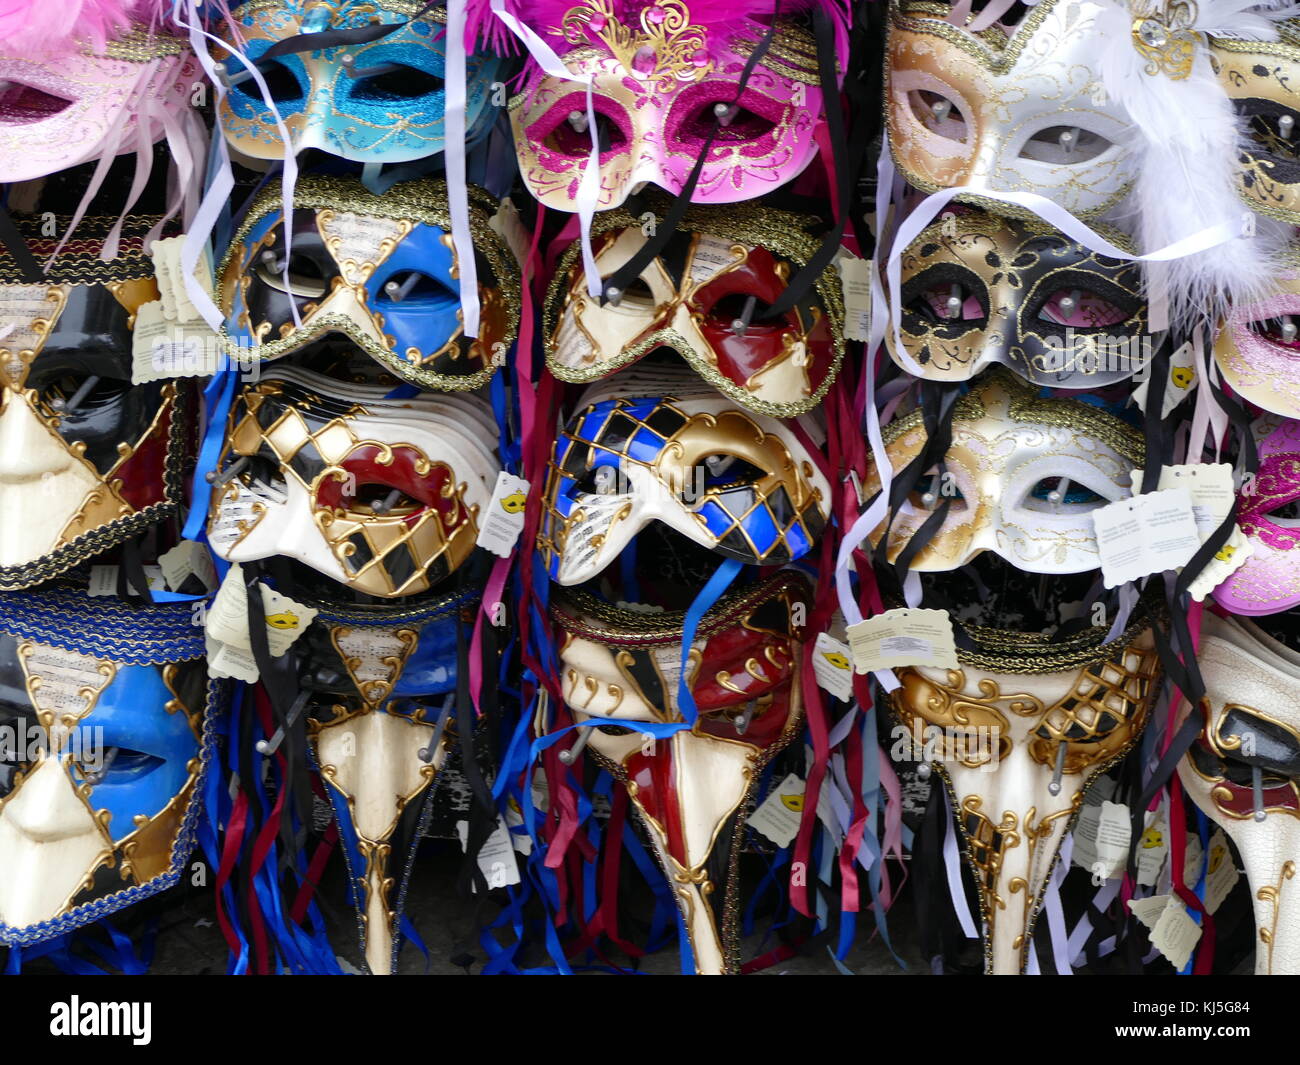 Decorado máscaras tradicionales para el Carnaval de Venecia (Carnevale di  Venezia), un festival anual que se celebra en Venecia, Italia. Comenzó a  recordar una victoria de la 'Serenissima Repubblica' contra el patriarca